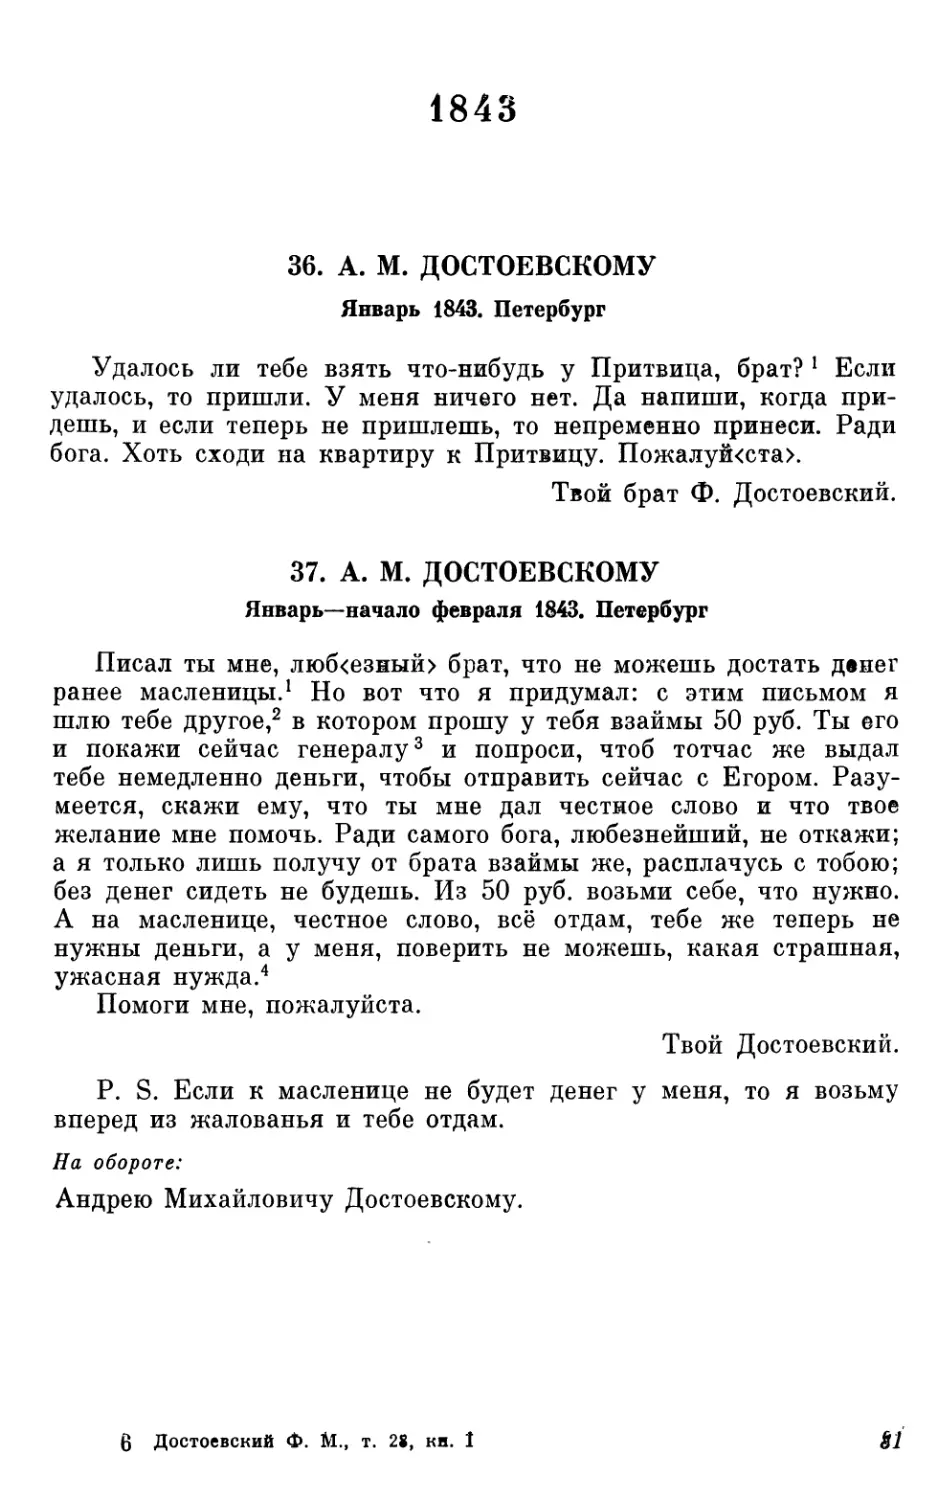 1843
37. А.М. Достоевскому. Январь—начало февраля